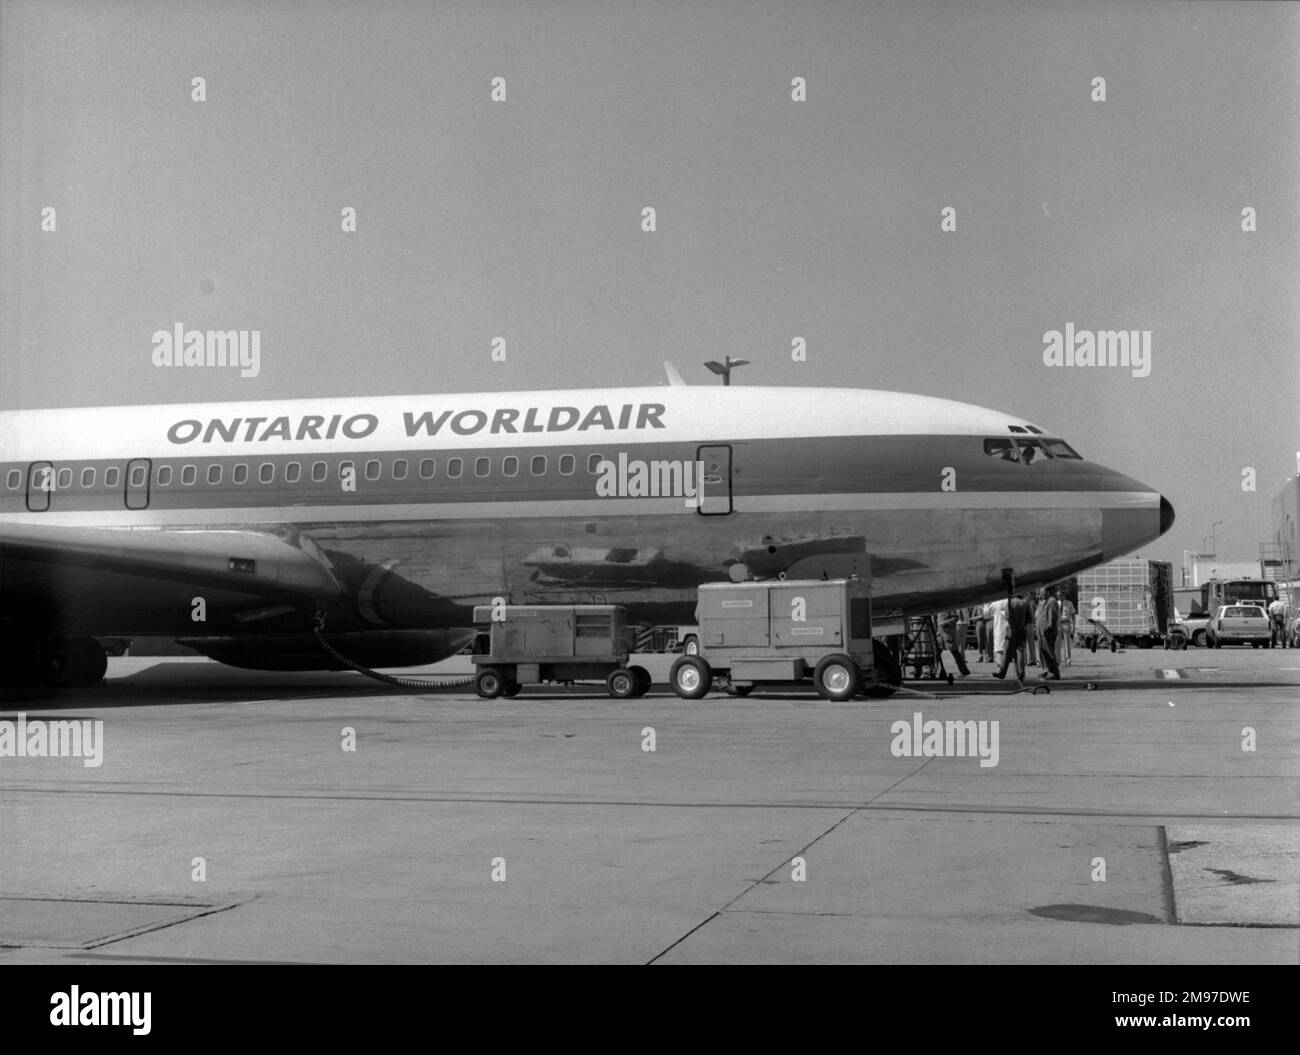 Nase einer Boeing 707-338 C-GRYN aus Ontario Worldair in Sydney um 1979 Uhr Stockfoto